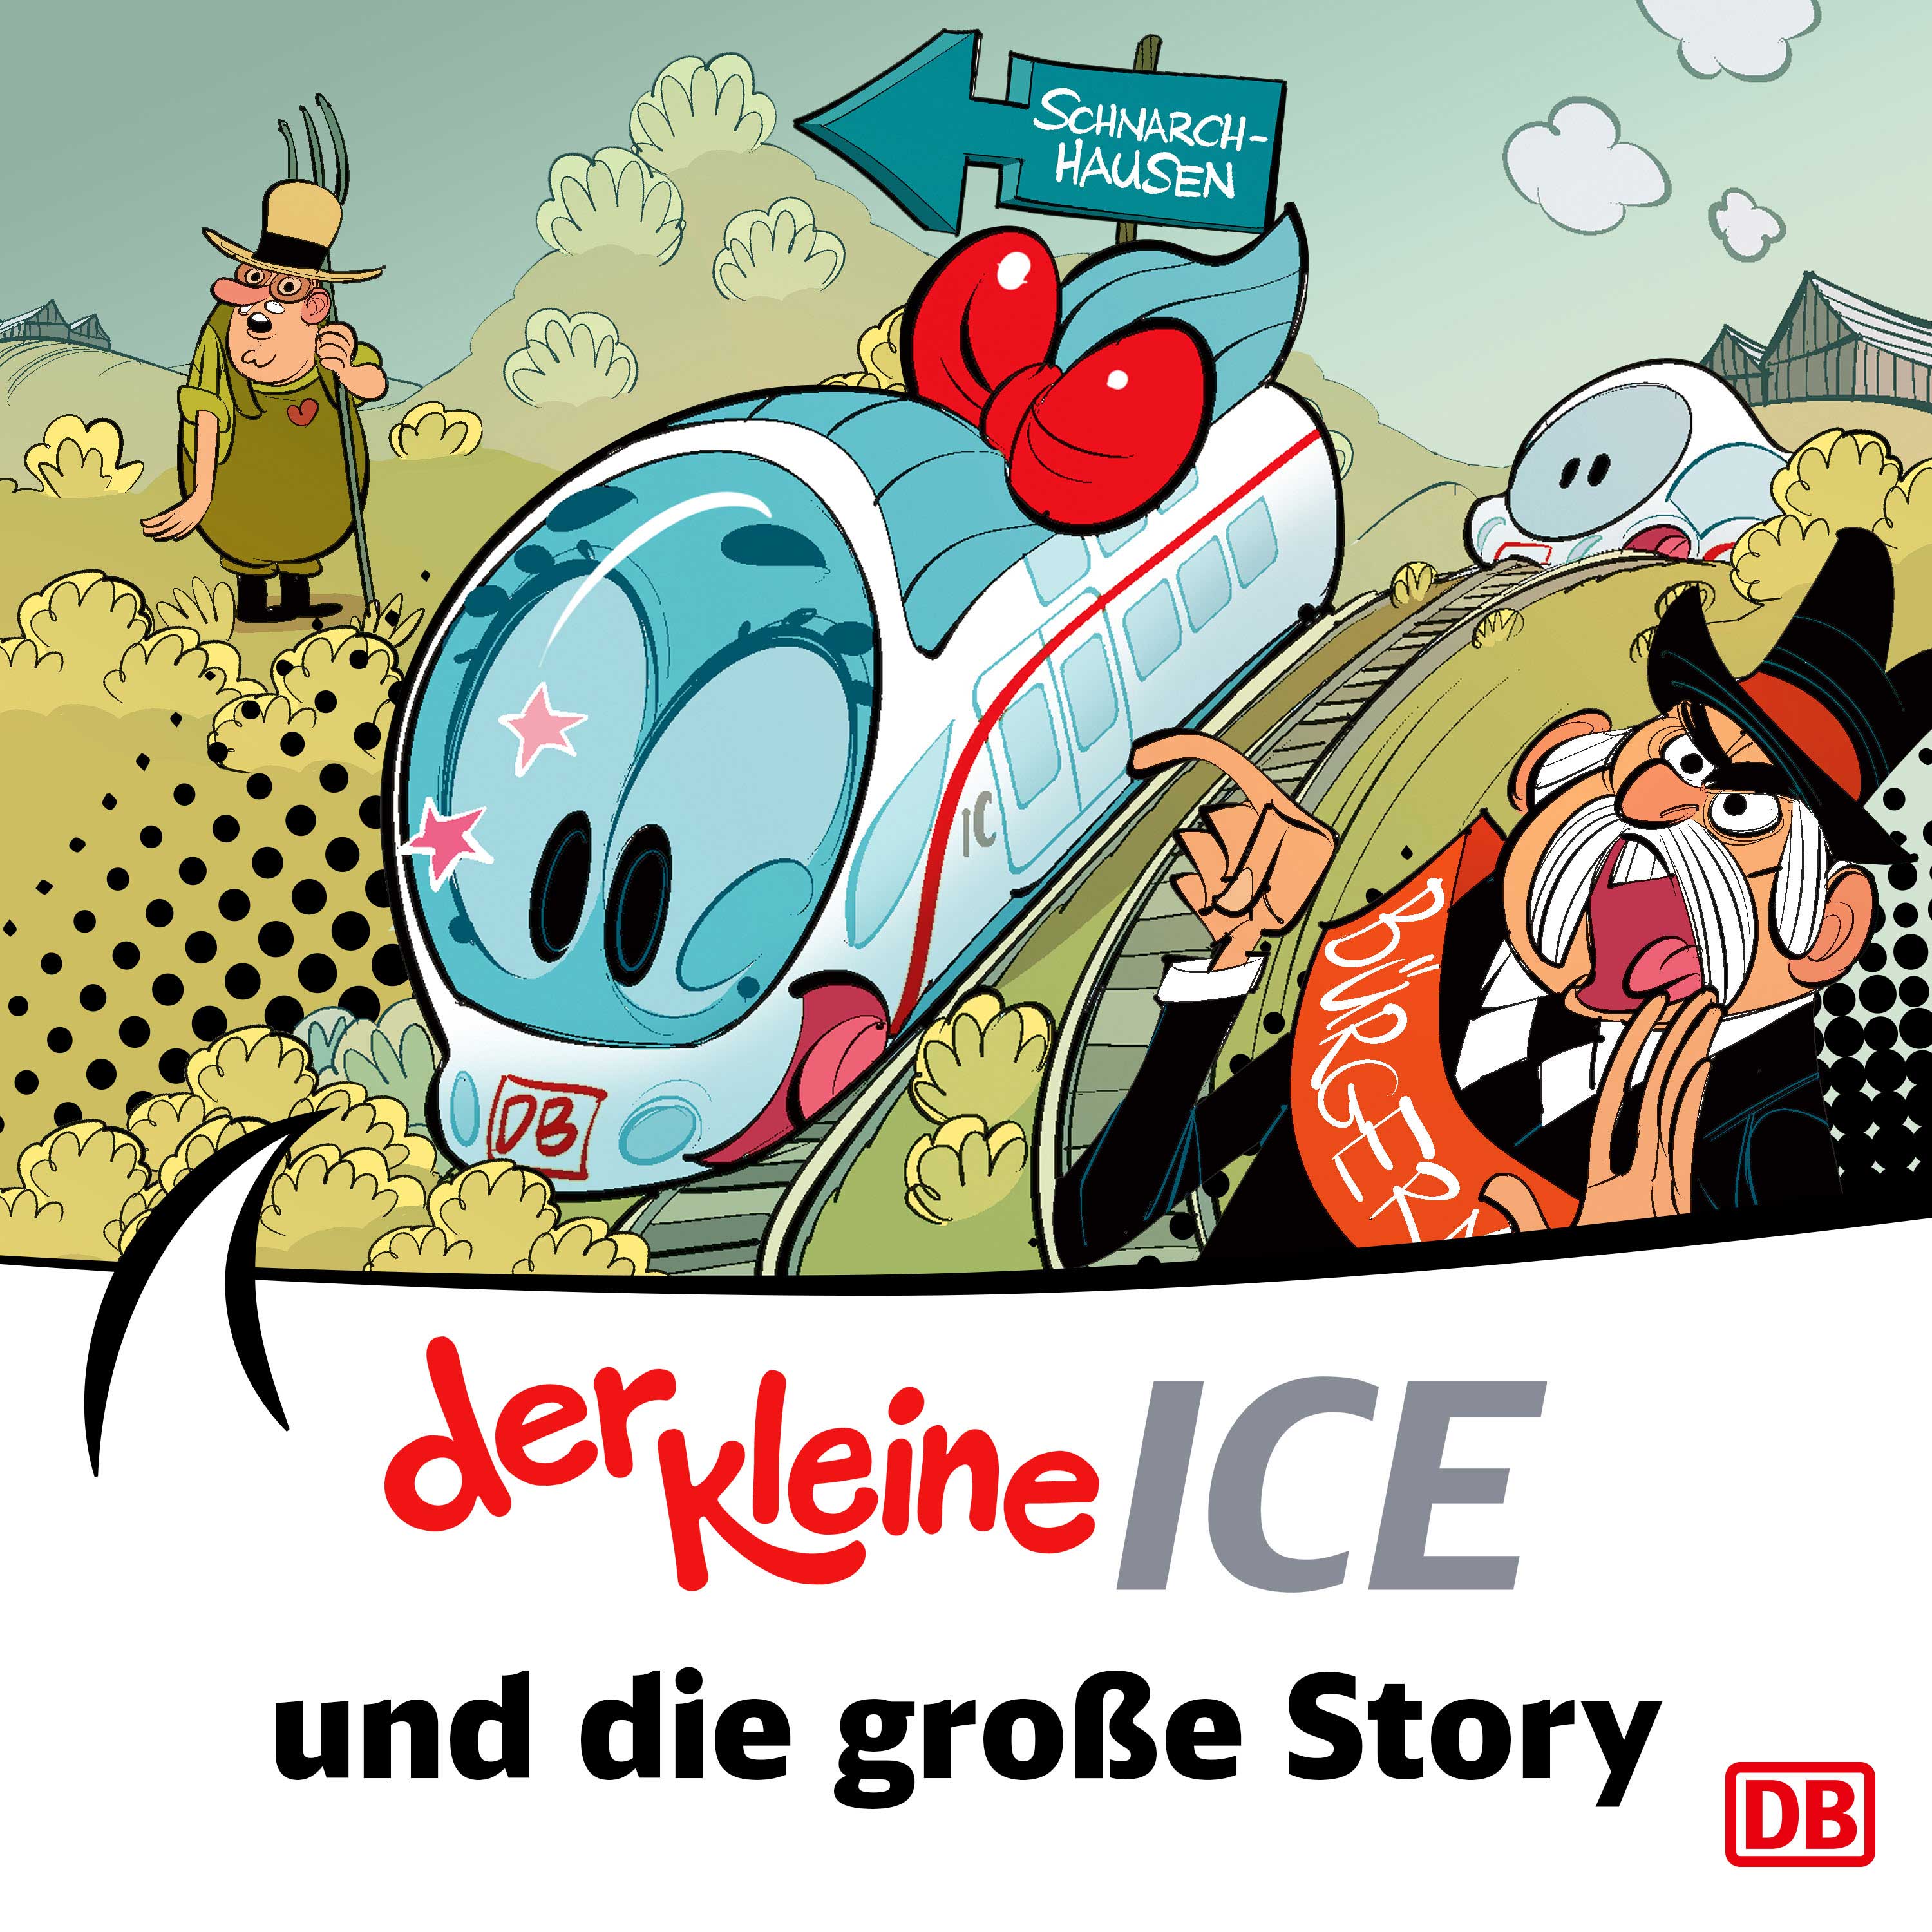 Der kleine ICE: Die große Story